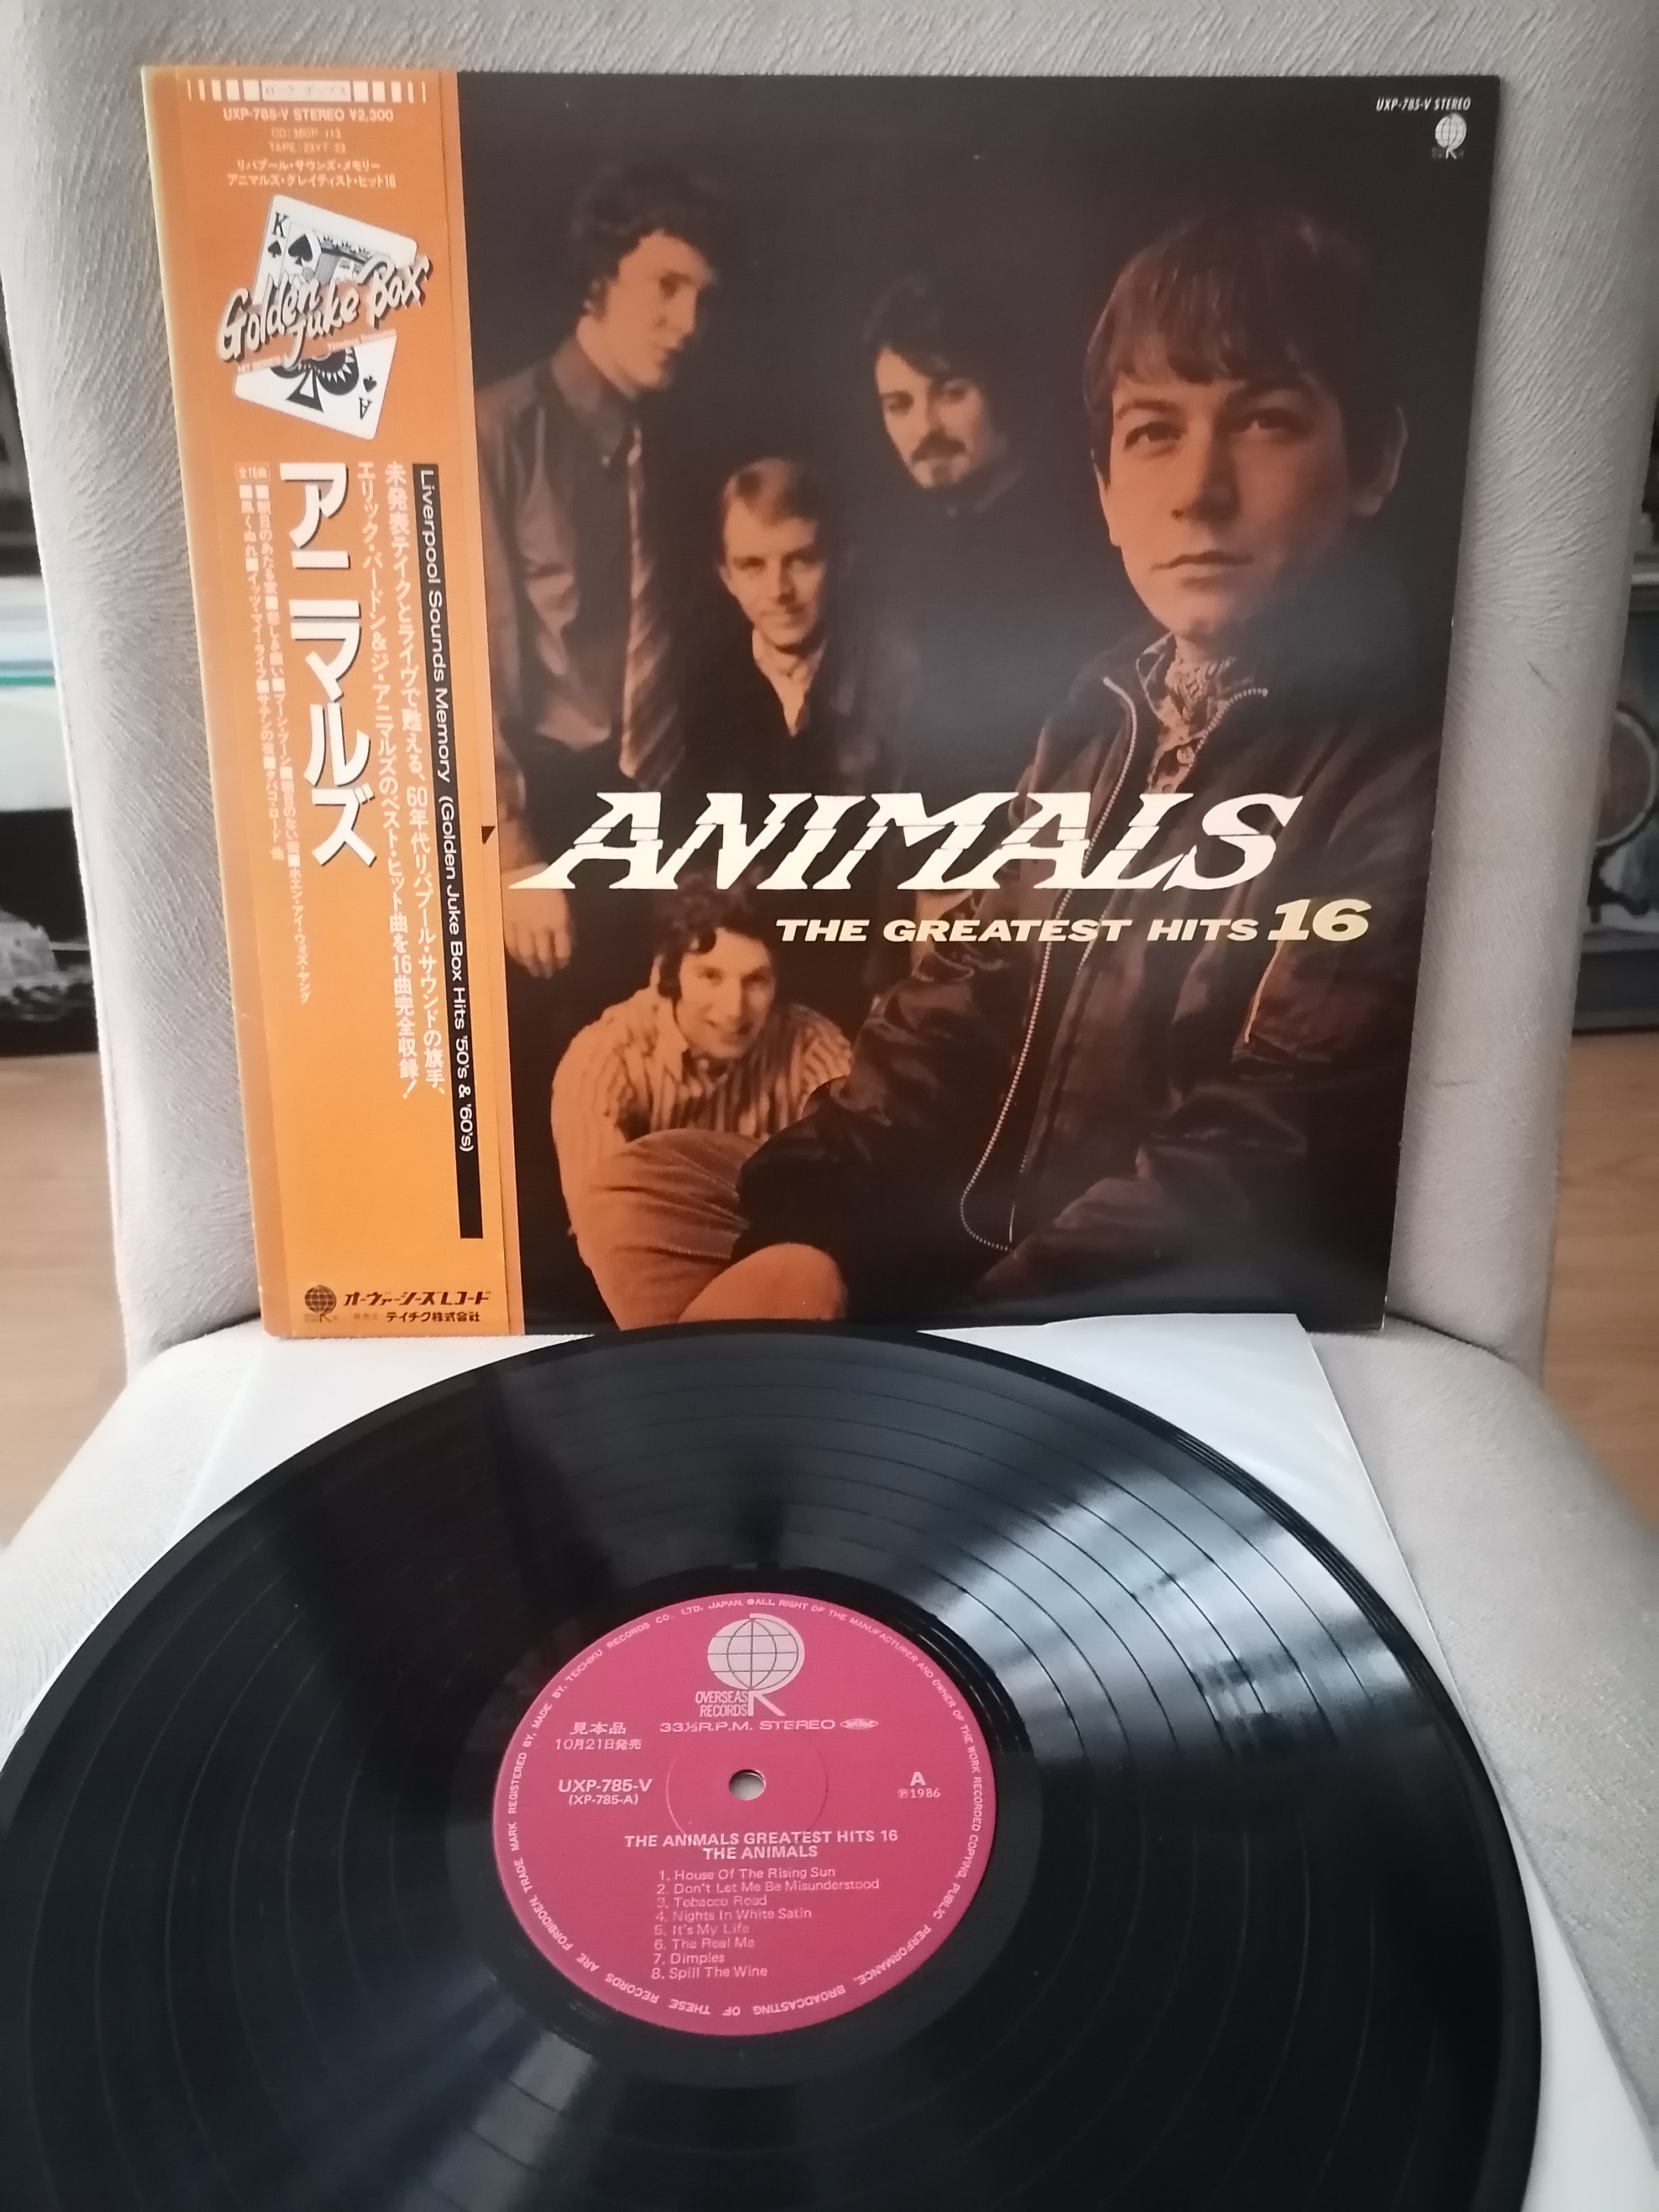 THE ANIMALS - The Greatest Hits 16 - 1986 Japonya Basım - LP Plak Albüm - Obi’li 2. EL